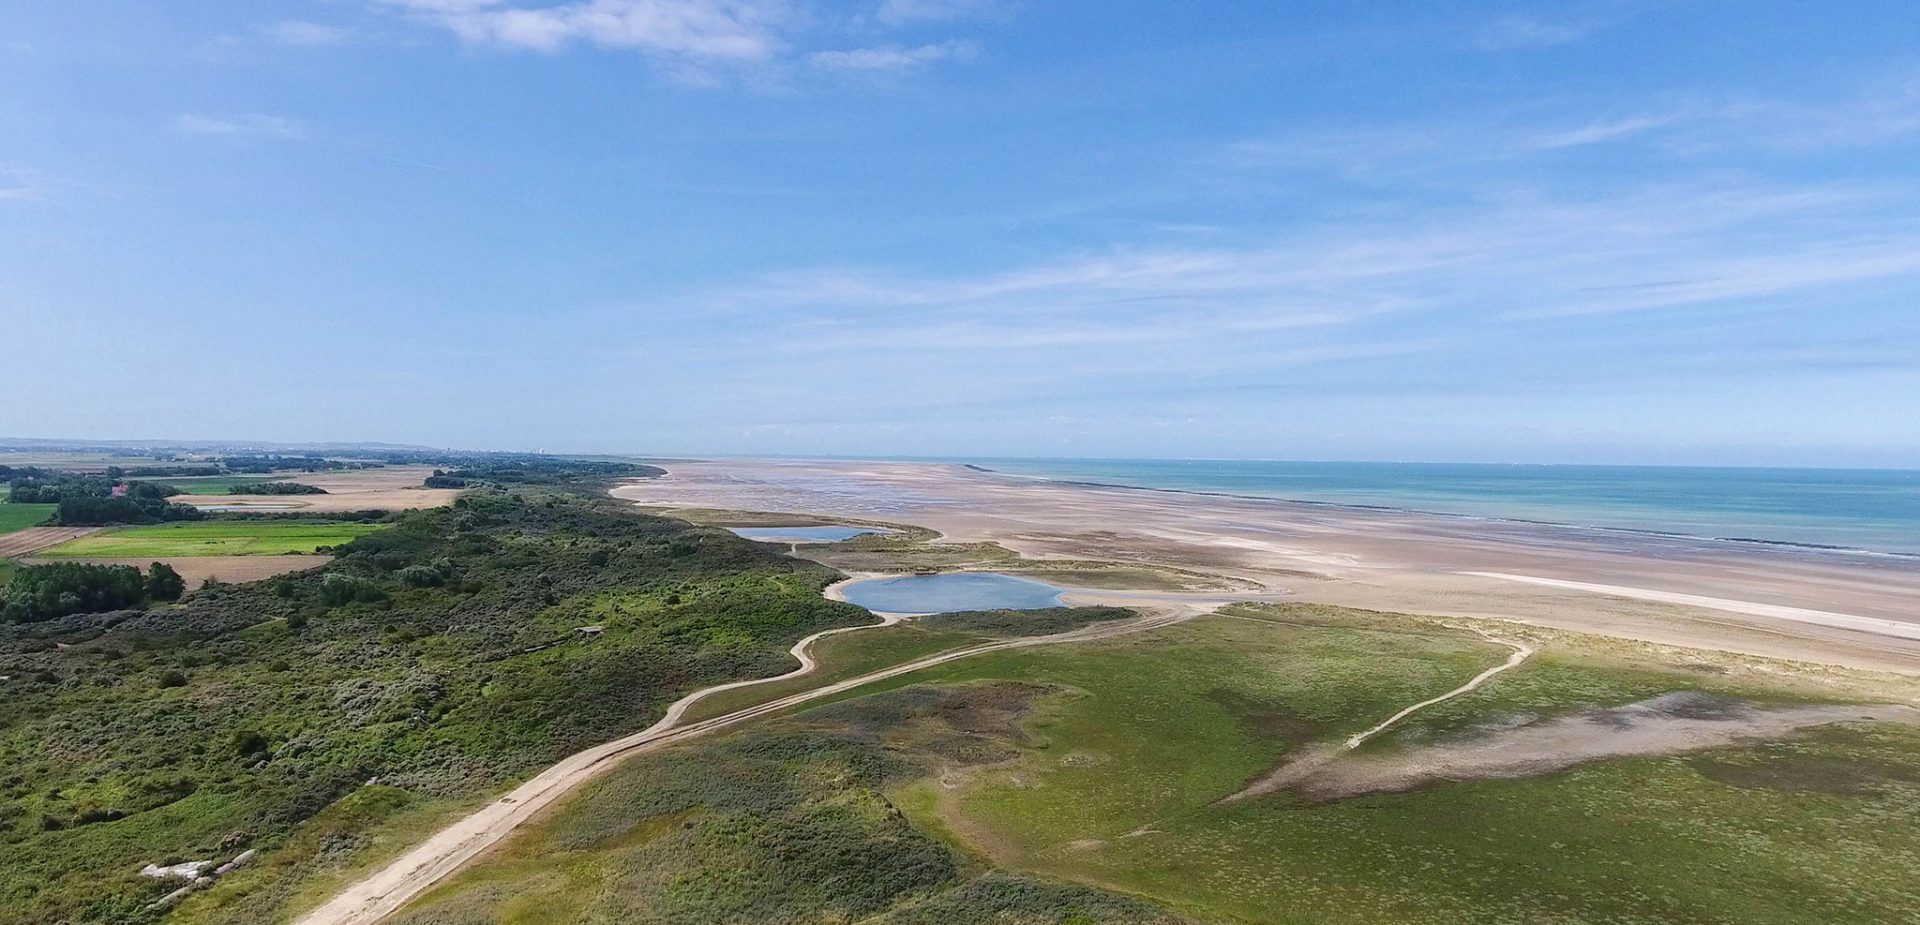 Camping Dunkerque : vue aérienne de la côte d'opale